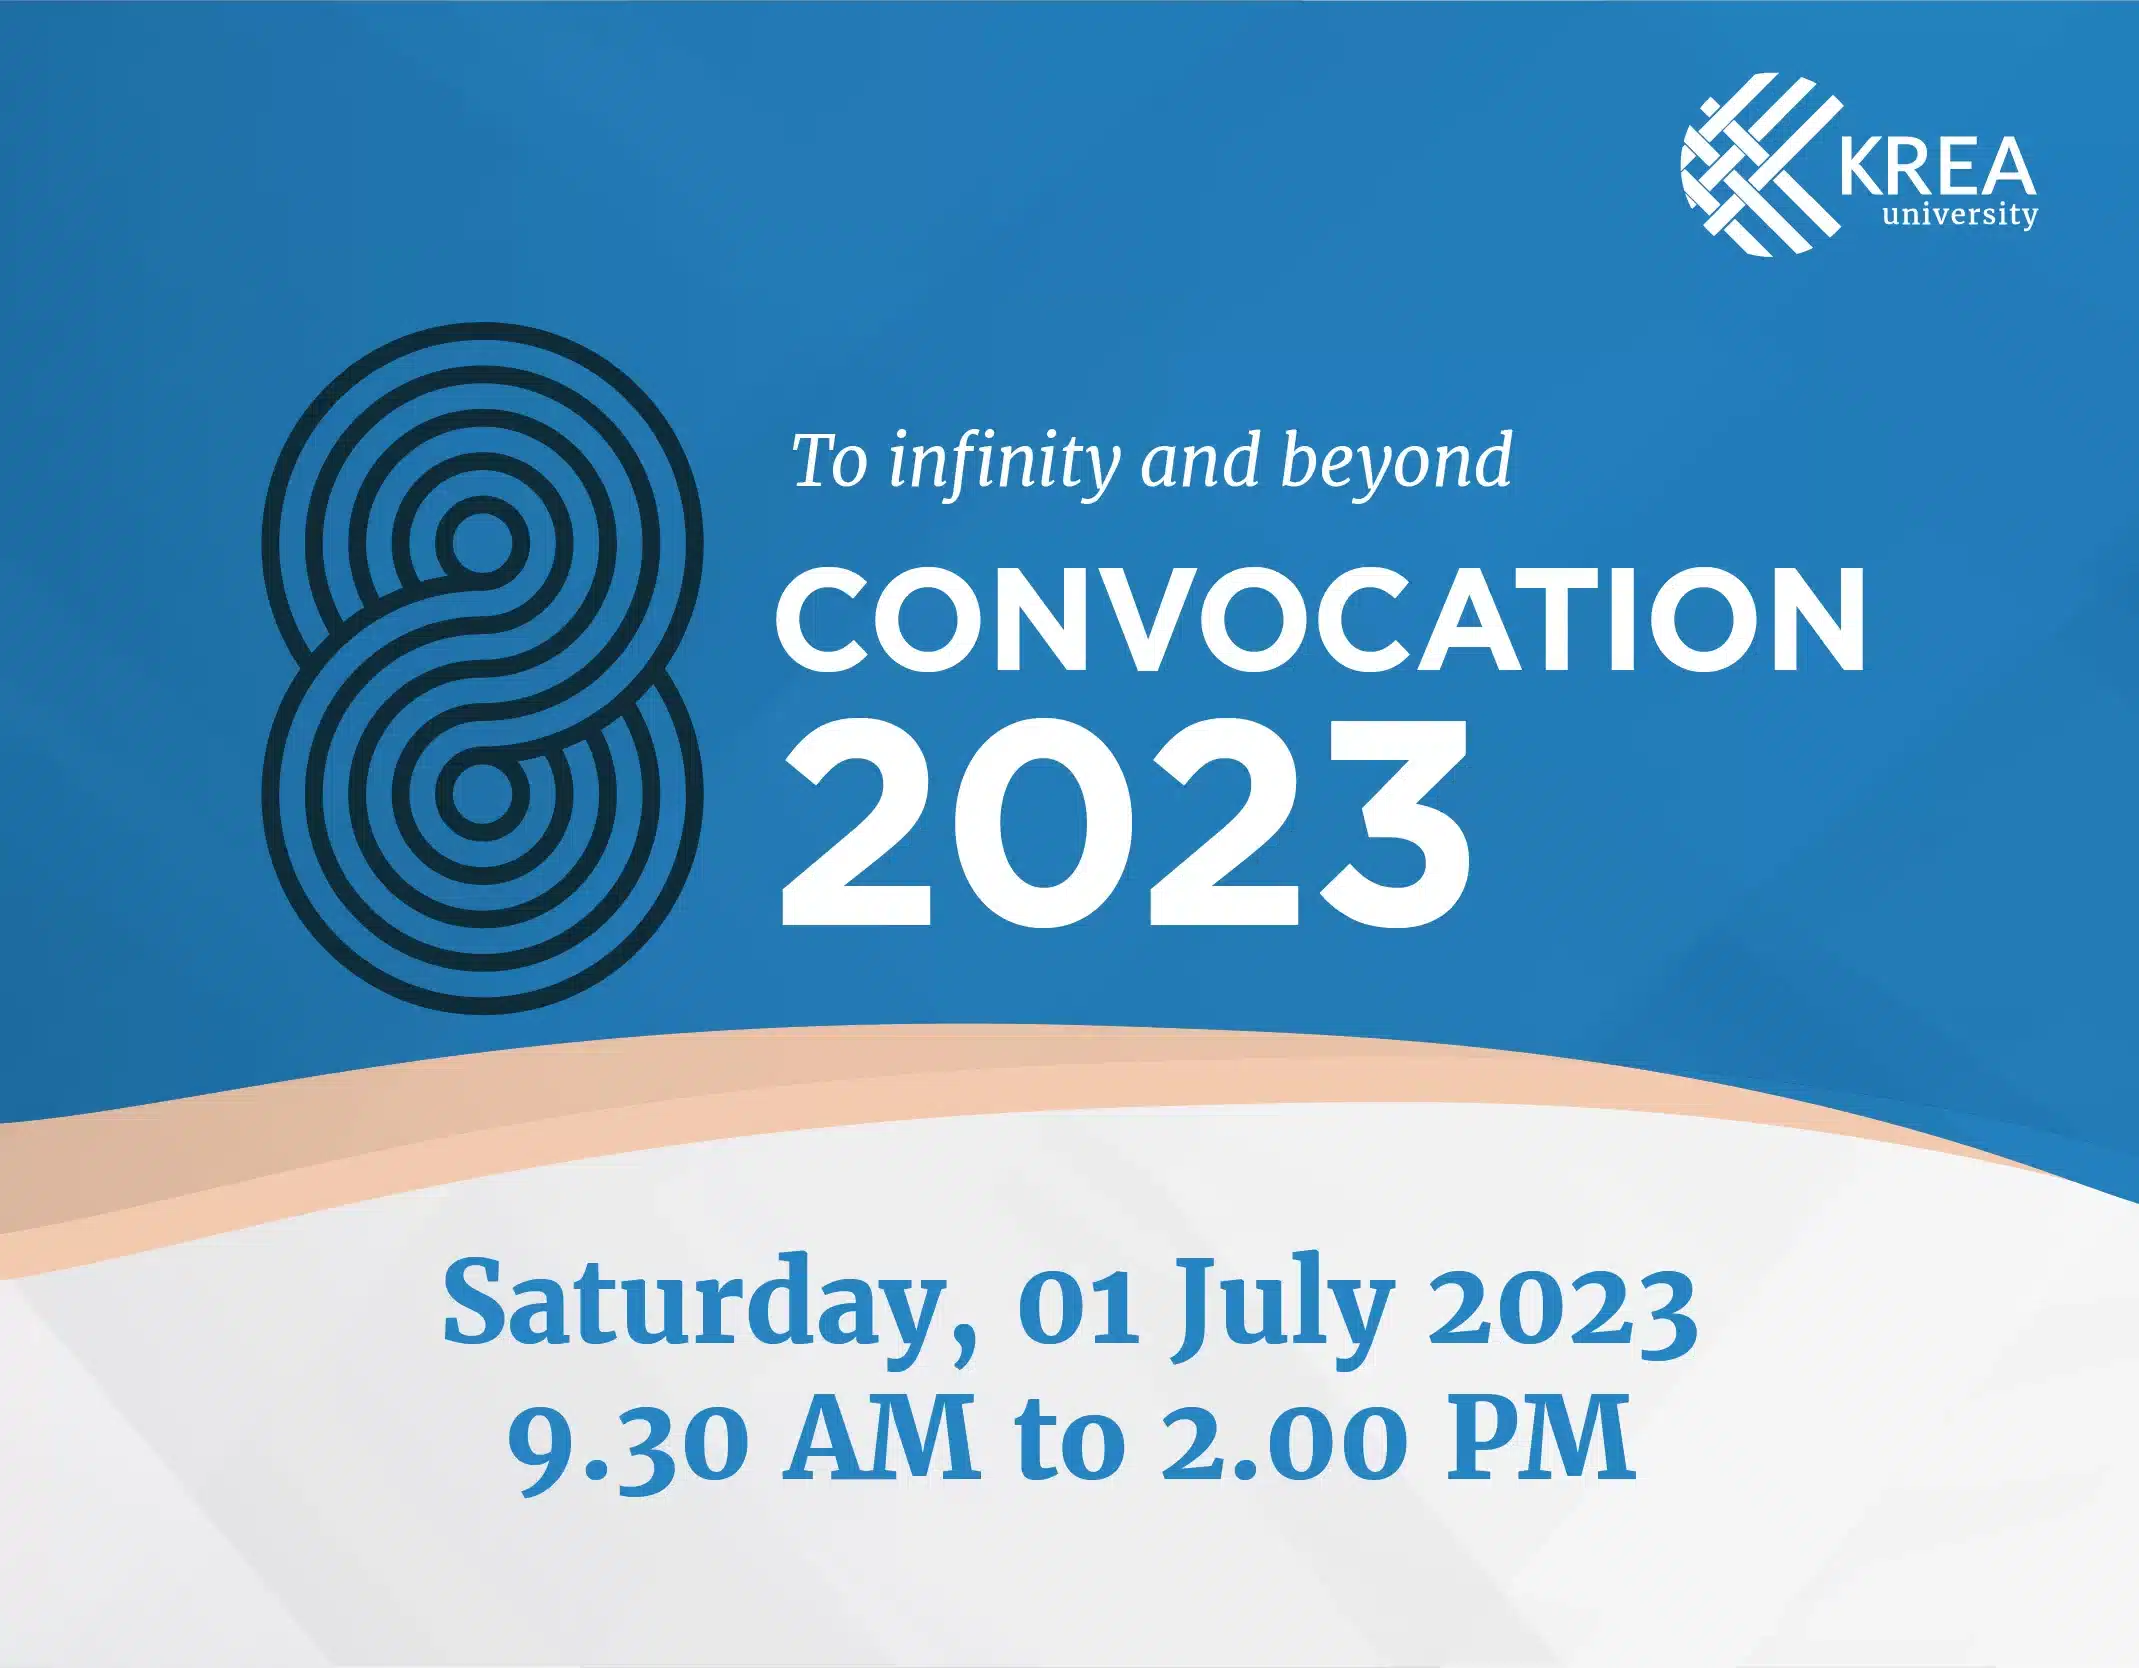 Krea University’s Convocation 2023